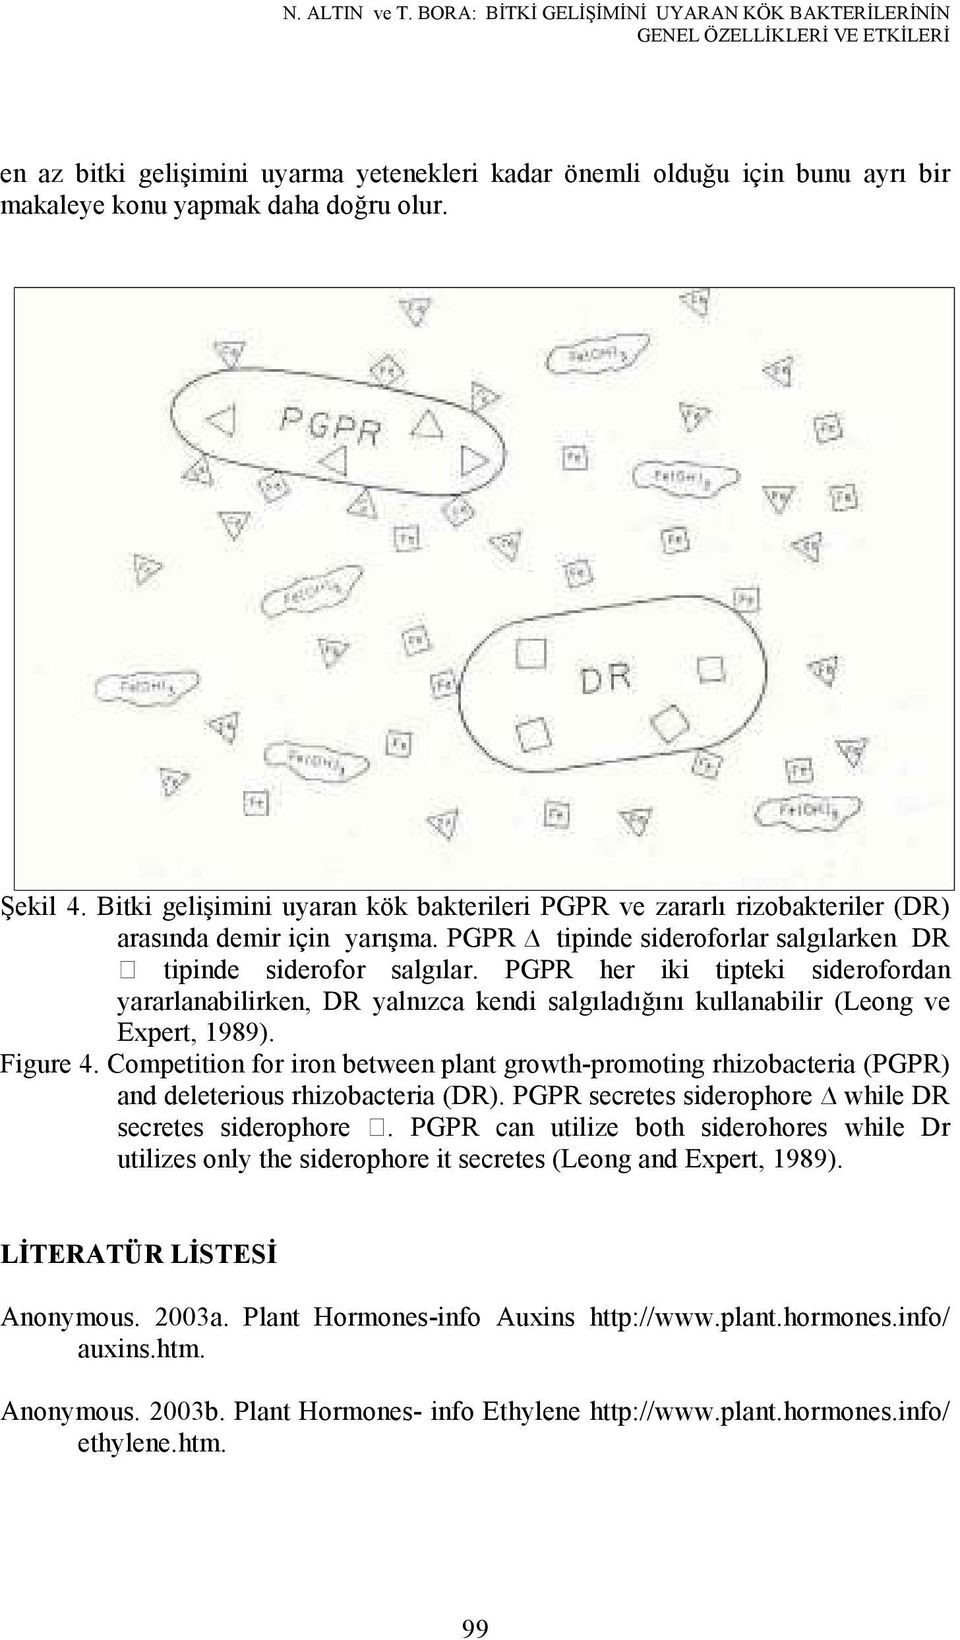 Şekil 4. Bitki gelişimini uyaran kök bakterileri PGPR ve zararlı rizobakteriler (DR) arasında demir için yarışma. PGPR tipinde sideroforlar salgılarken DR tipinde siderofor salgılar.